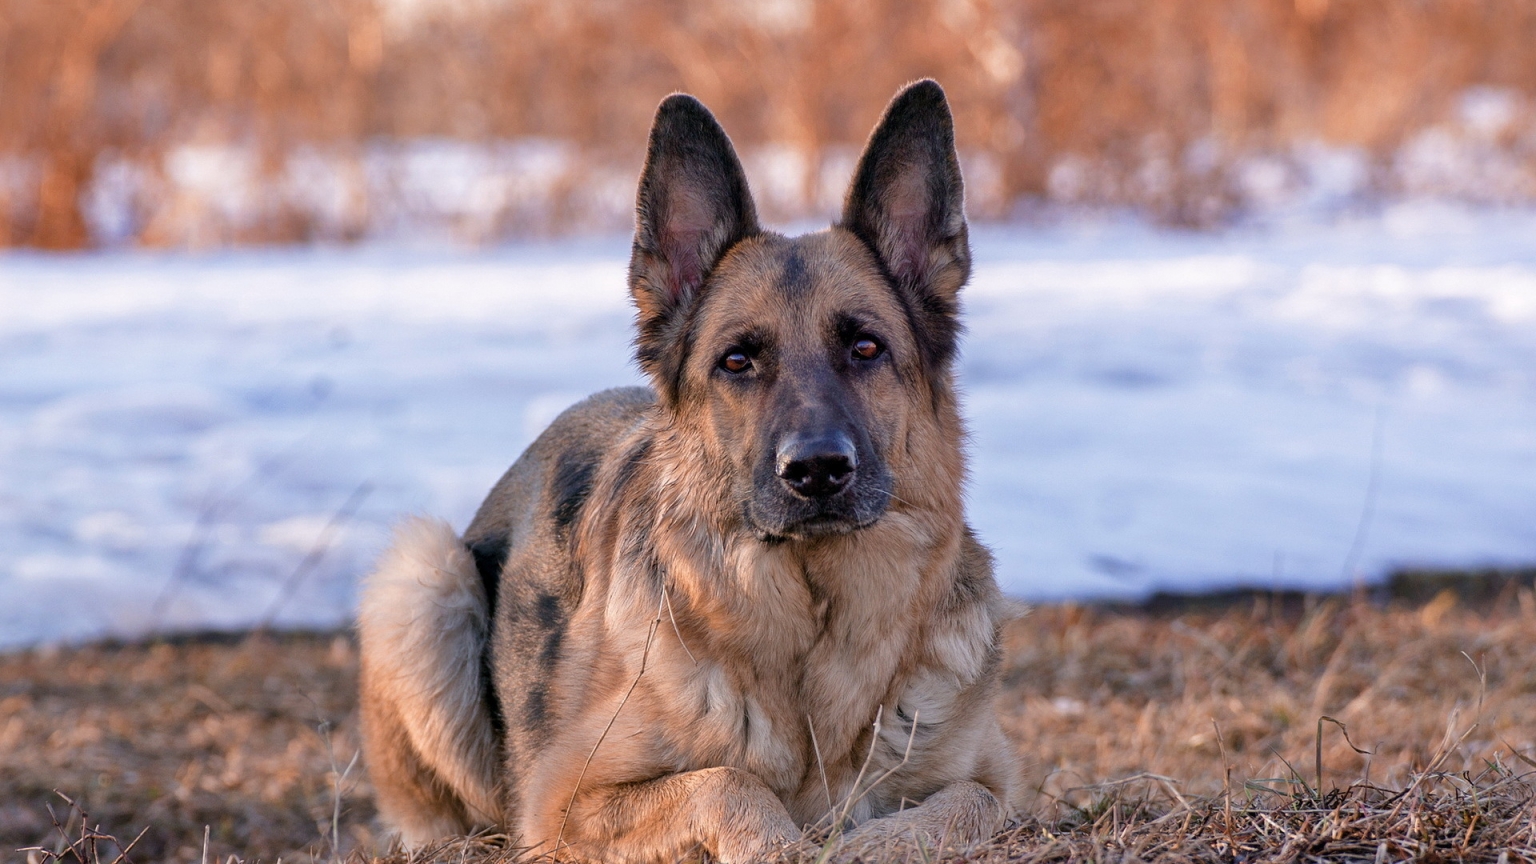 German Shepherd Dog for 1536 x 864 HDTV resolution